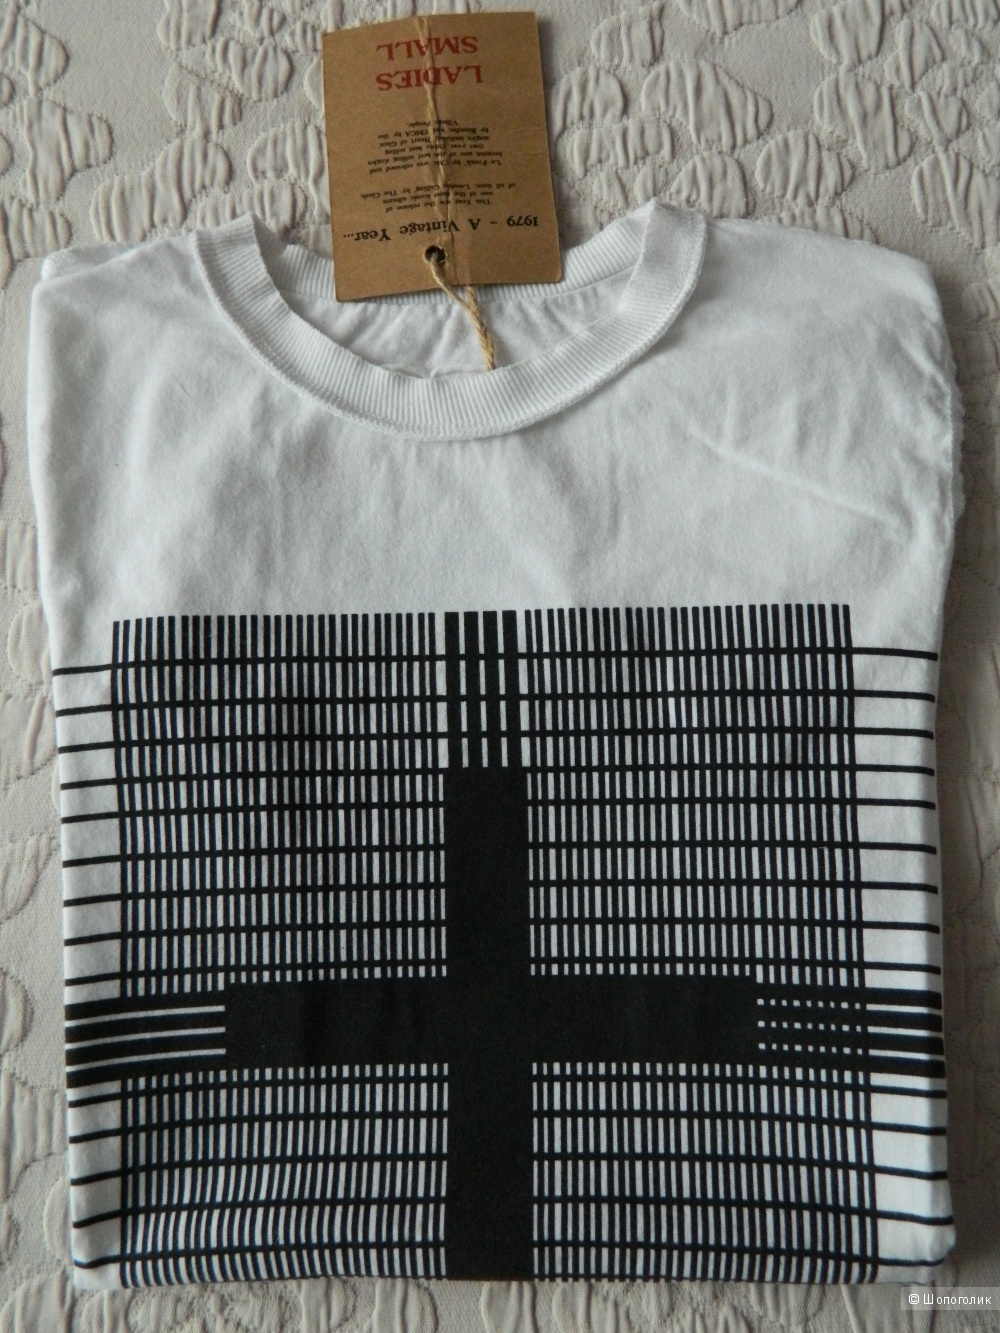 Amplified Cross T-Shirt, размер S